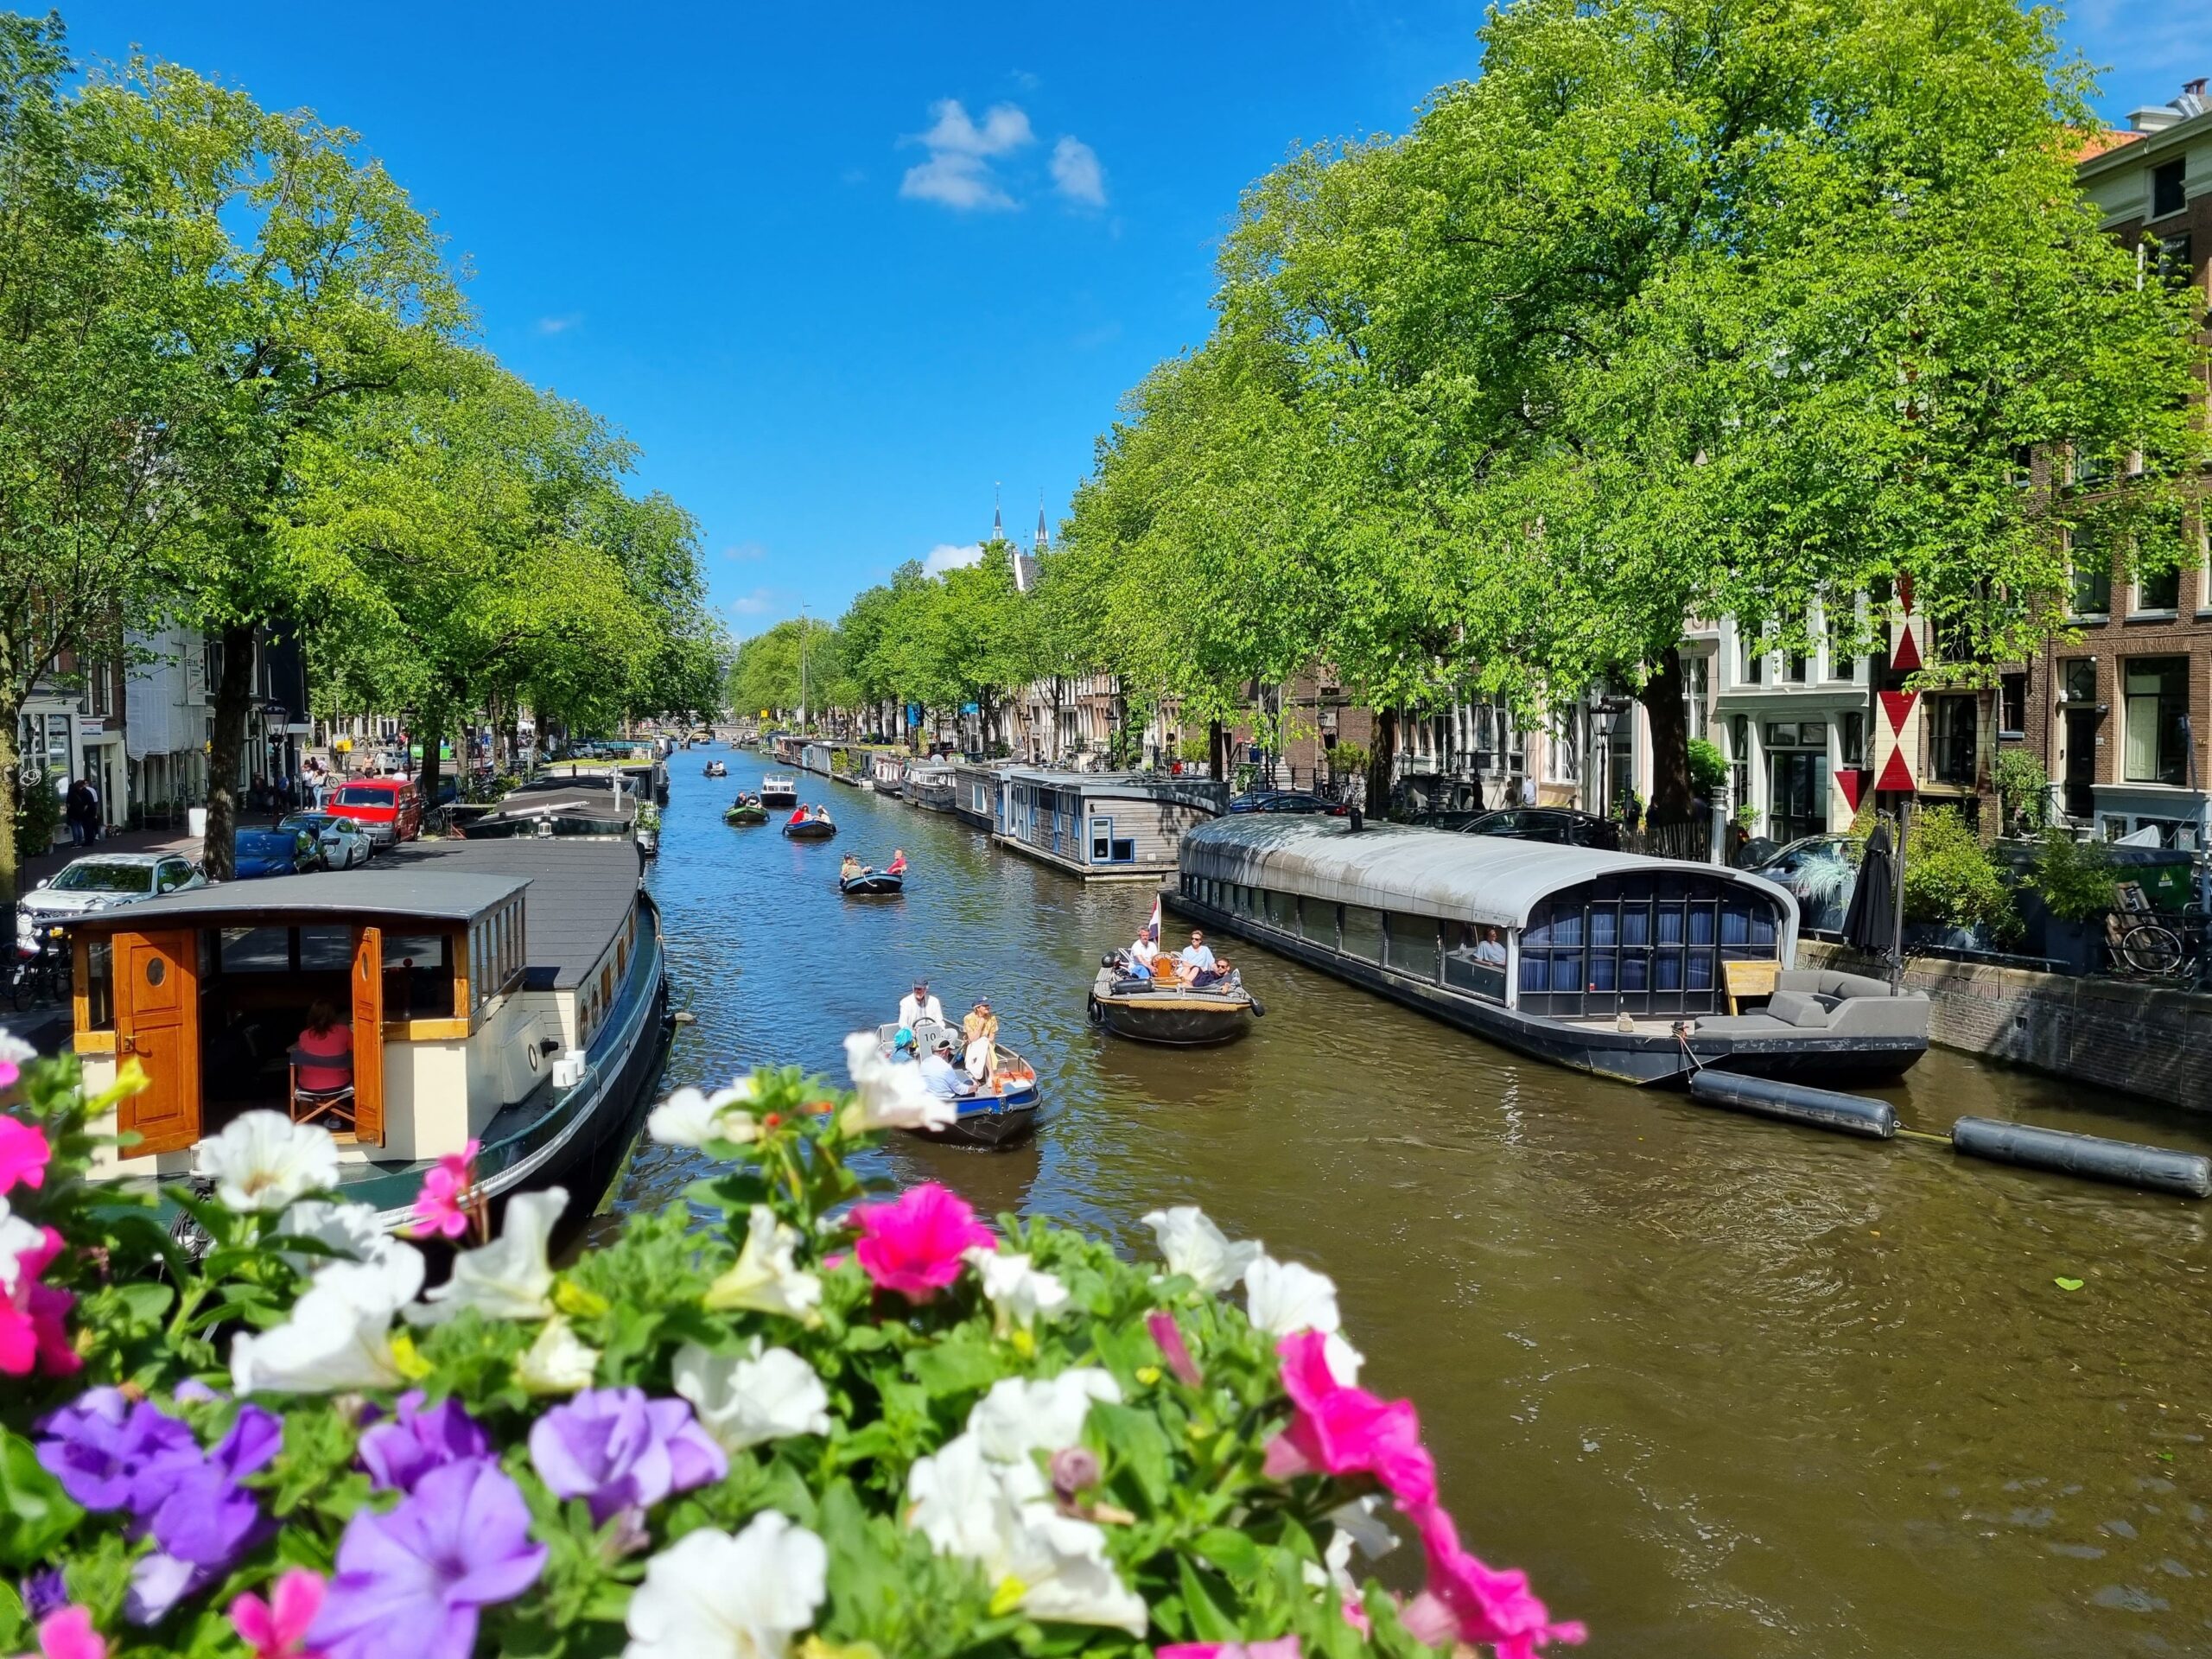 Geschiedenis van Amsterdam